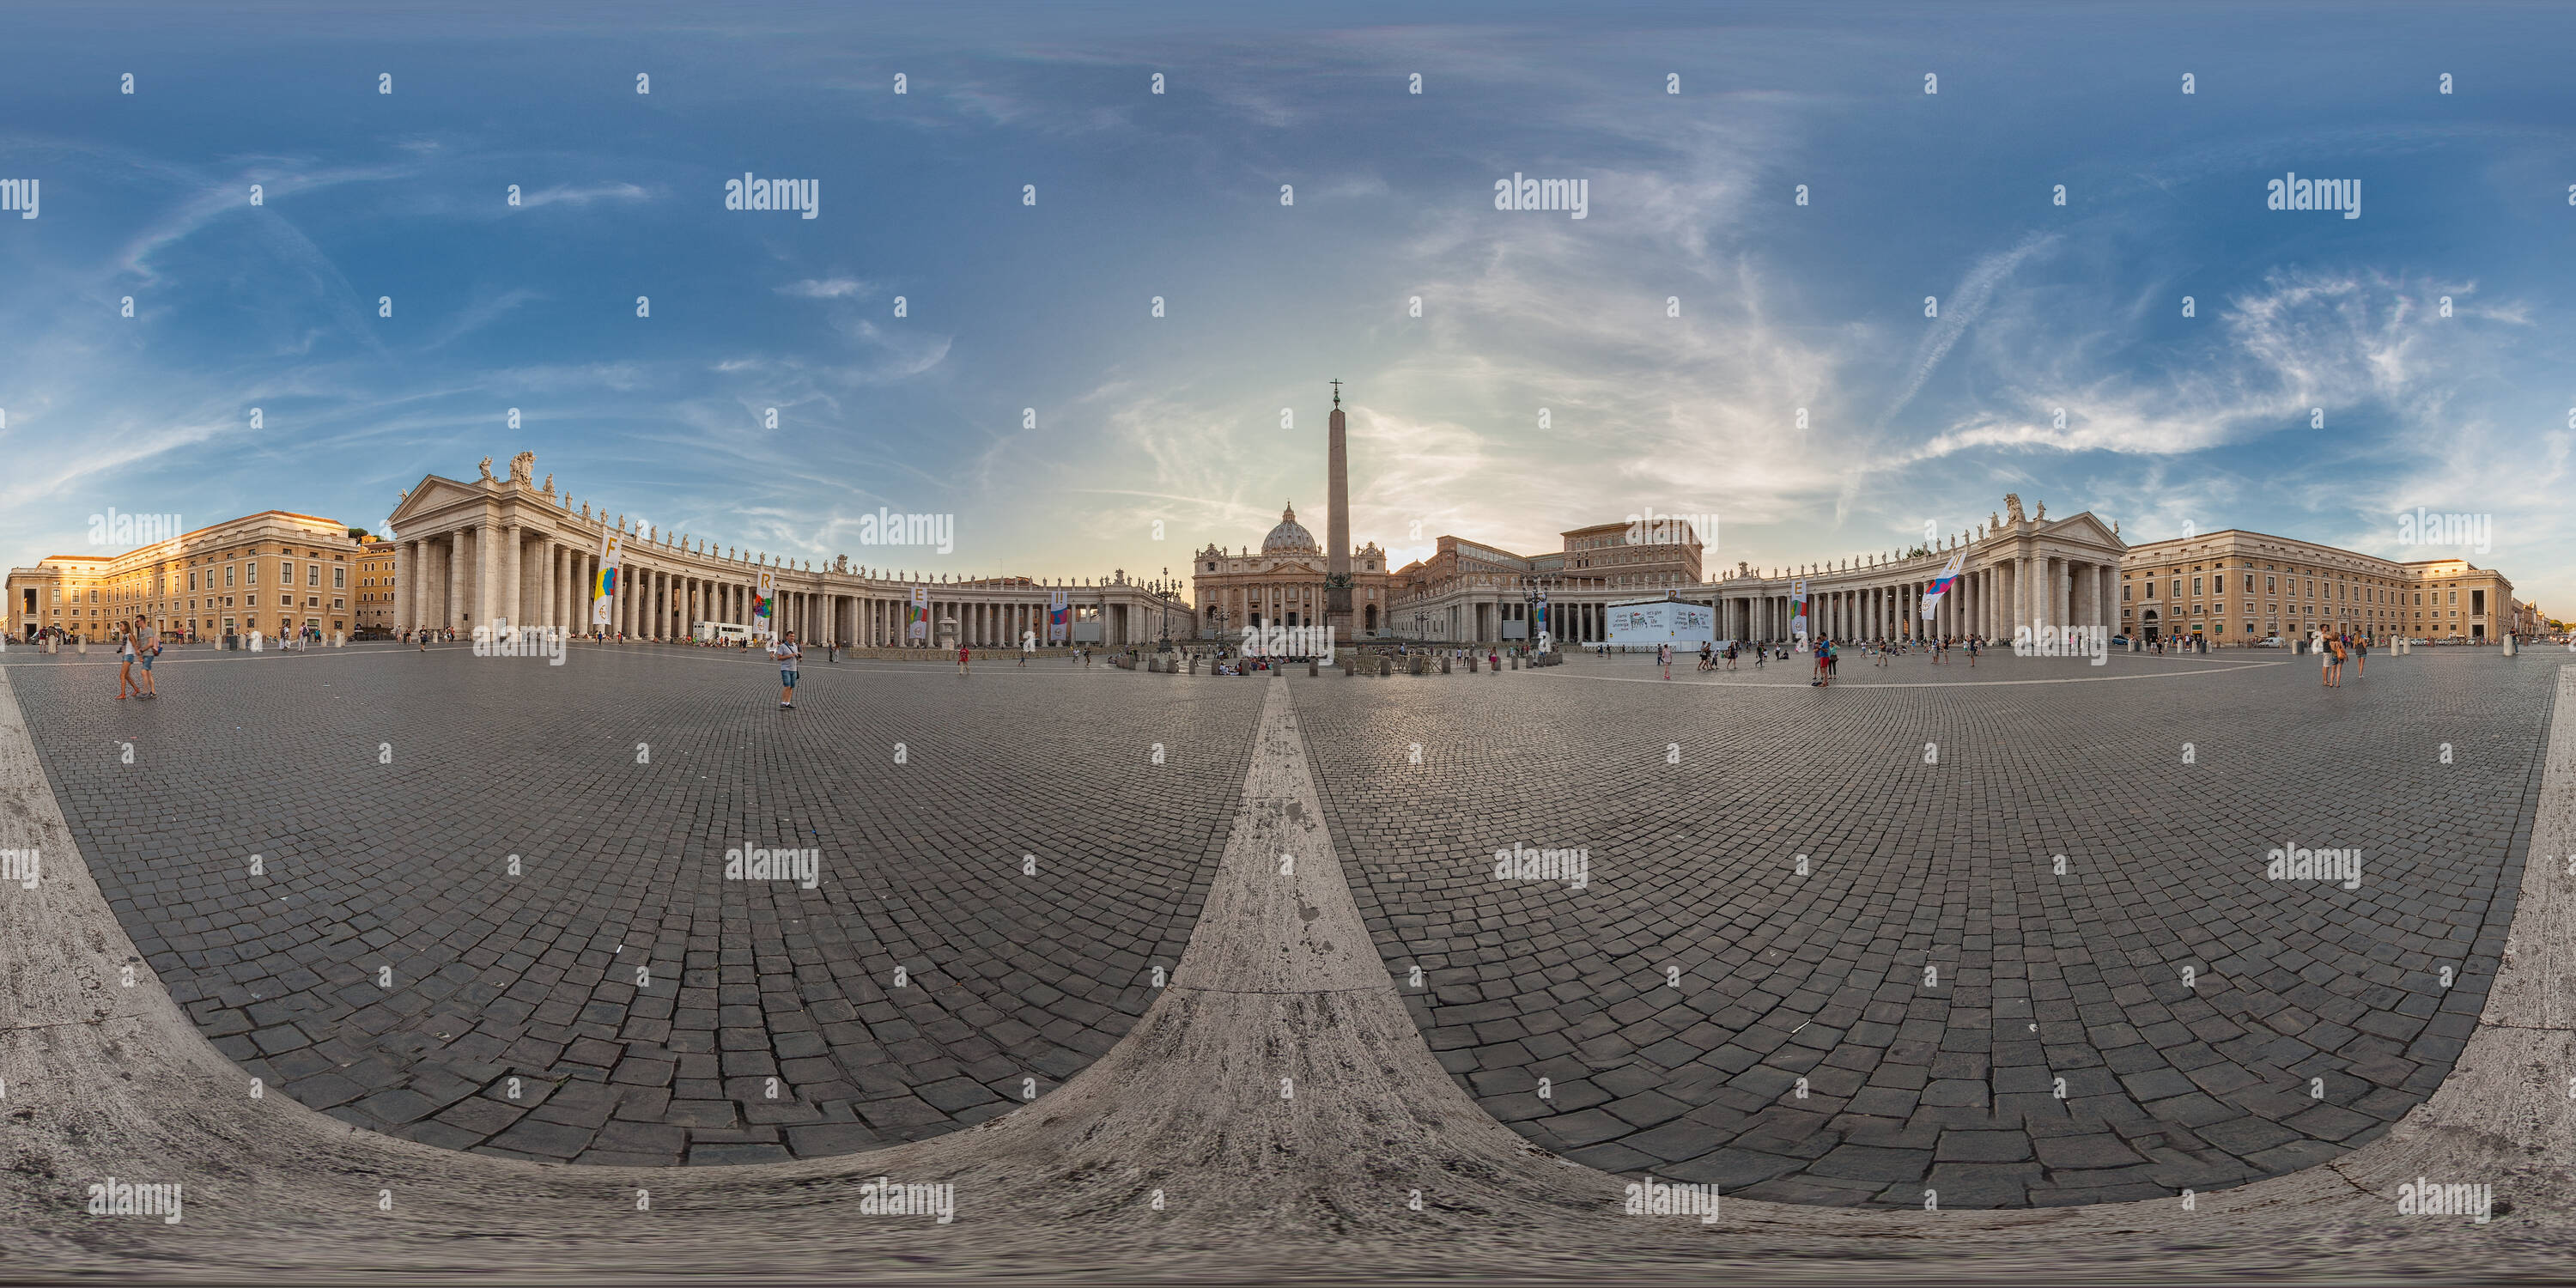 Vue panoramique à 360° de Piazza S. Pietro